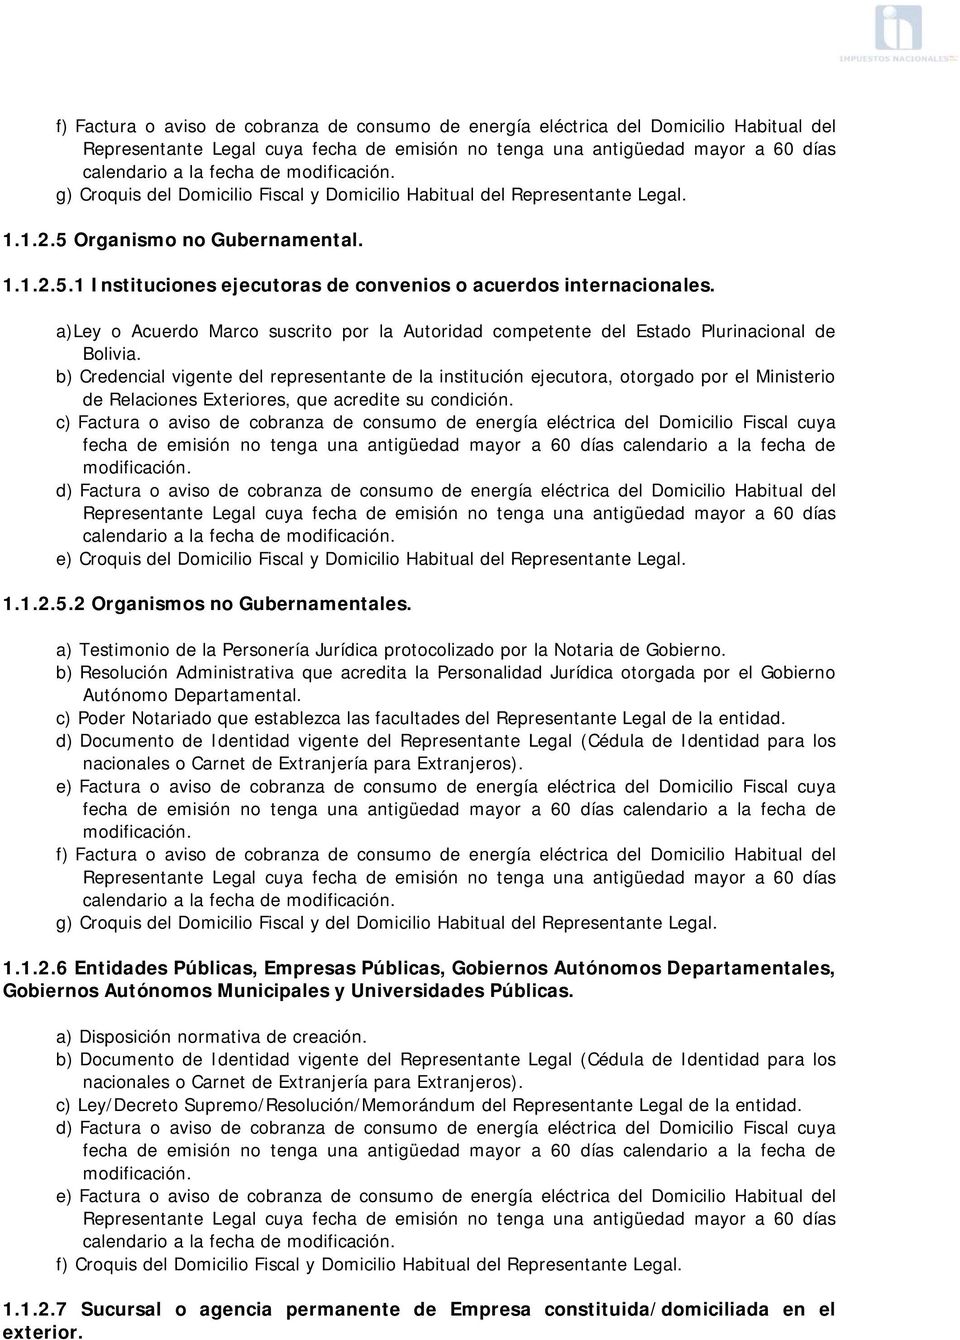 a)ley o Acuerdo Marco suscrito por la Autoridad competente del Estado Plurinacional de Bolivia.